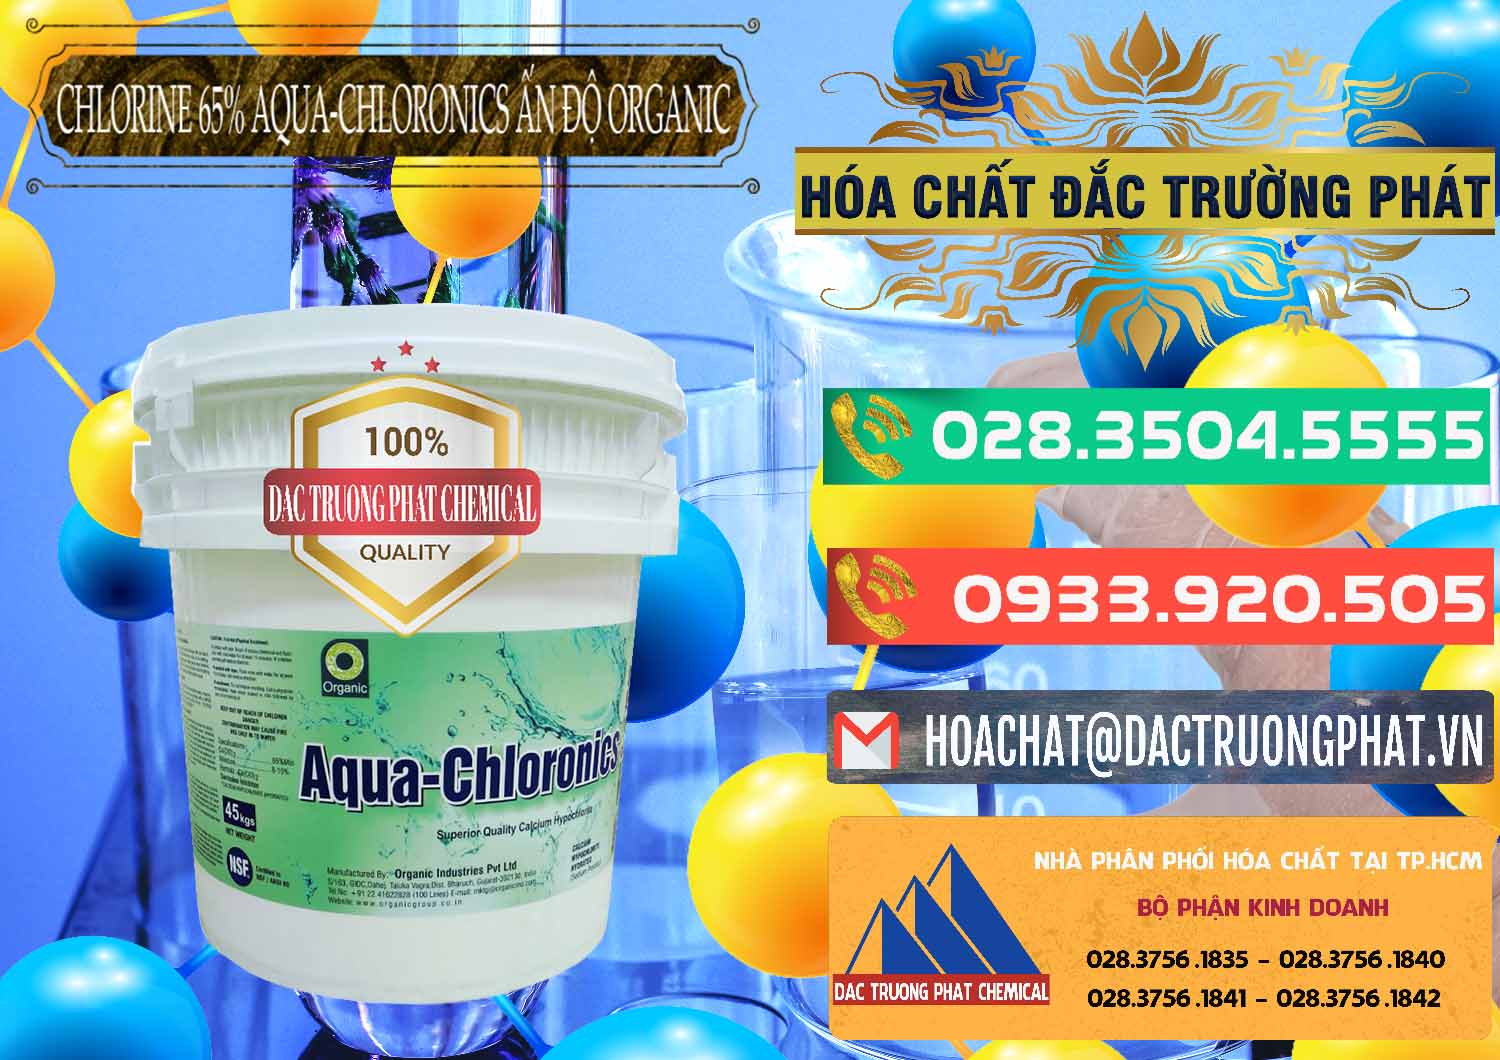 Cty chuyên kinh doanh ( bán ) Chlorine – Clorin 65% Aqua-Chloronics Ấn Độ Organic India - 0210 - Kinh doanh và cung cấp hóa chất tại TP.HCM - congtyhoachat.com.vn